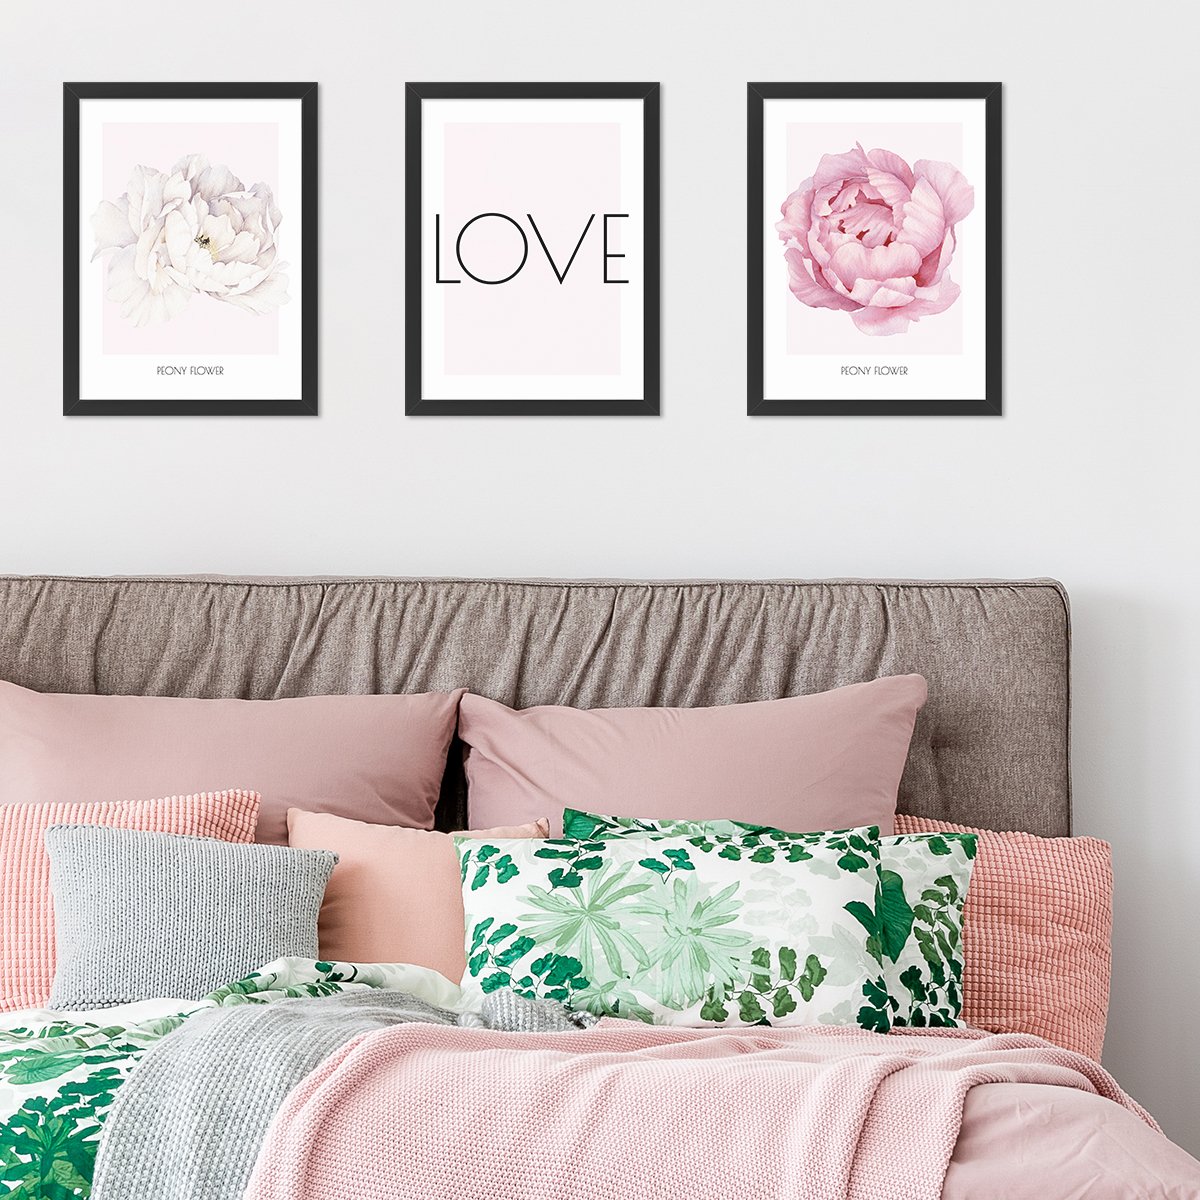 Plakaty do sypialni z kwiatami i napisem LOVE powieszone na ścianie nad łózkiem#kolor_rozowy